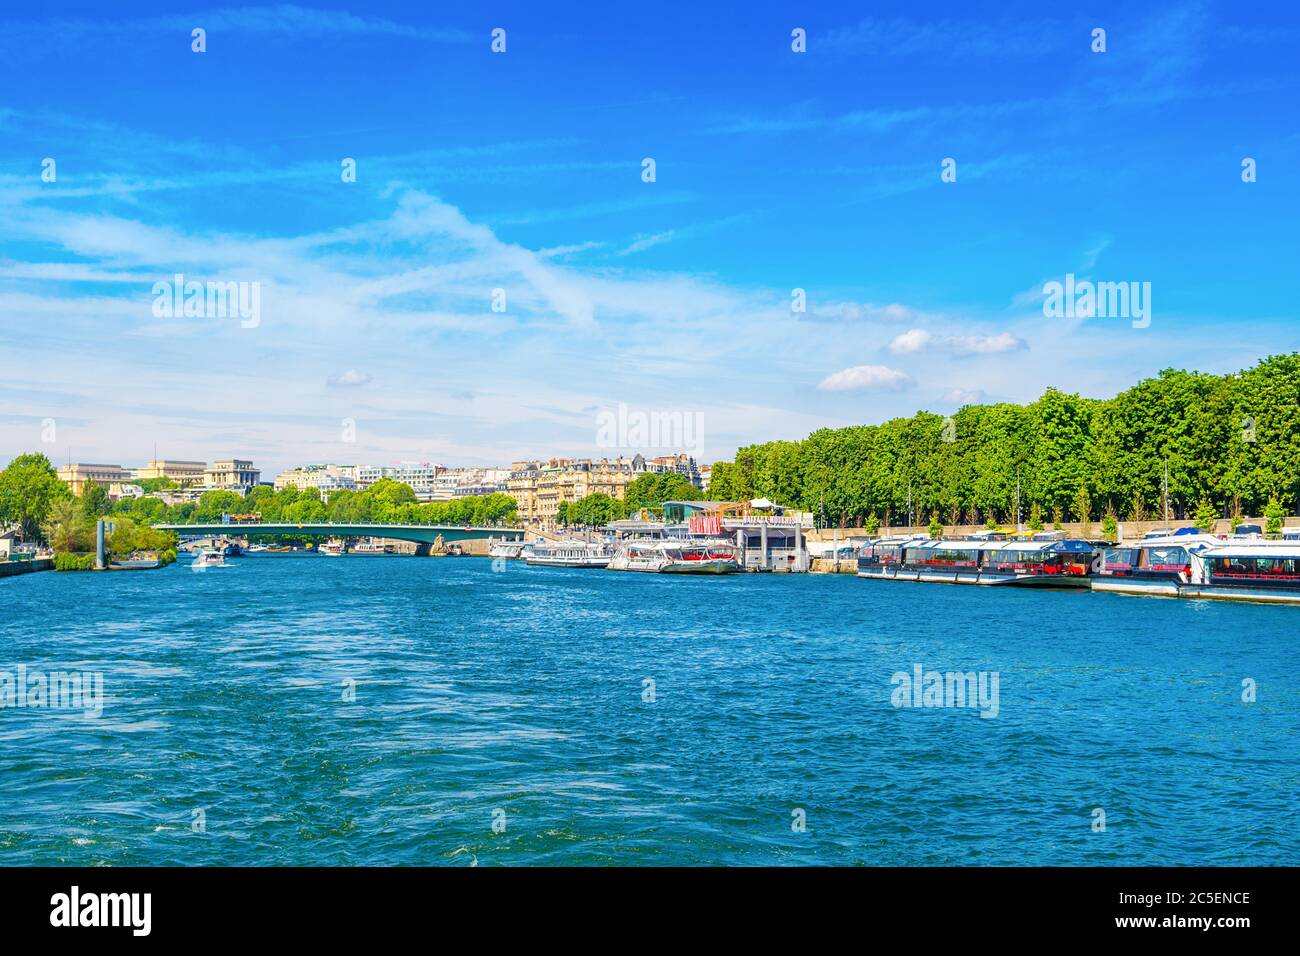 París, Francia - 25 de junio de 2019: Paisaje con el Puente Alma - Pont de l'Alma a través del río Sena, París Foto de stock